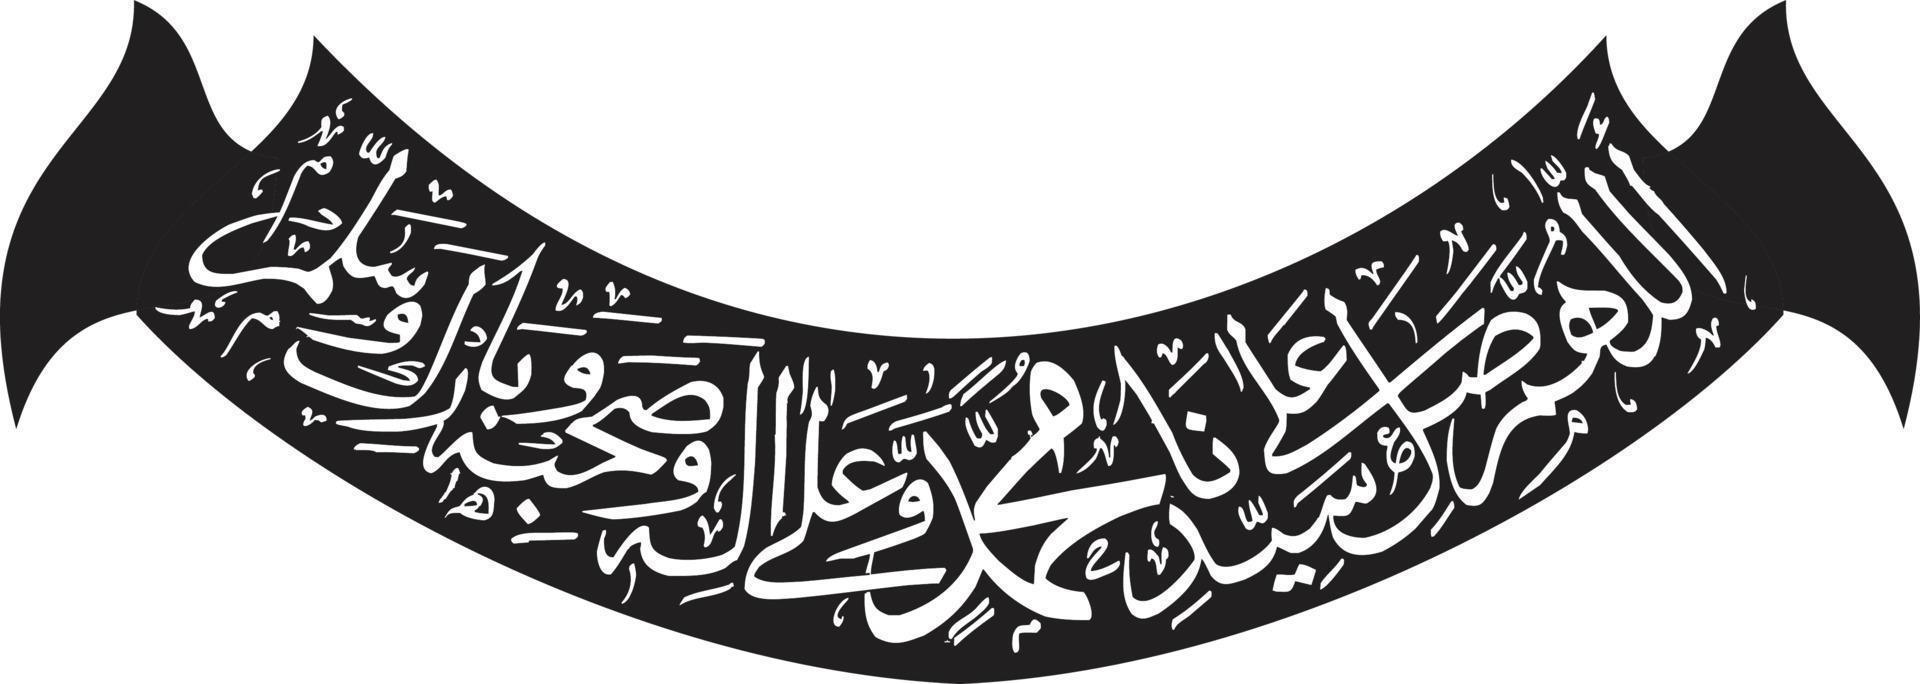 vector libre de caligrafía árabe islámica arbi